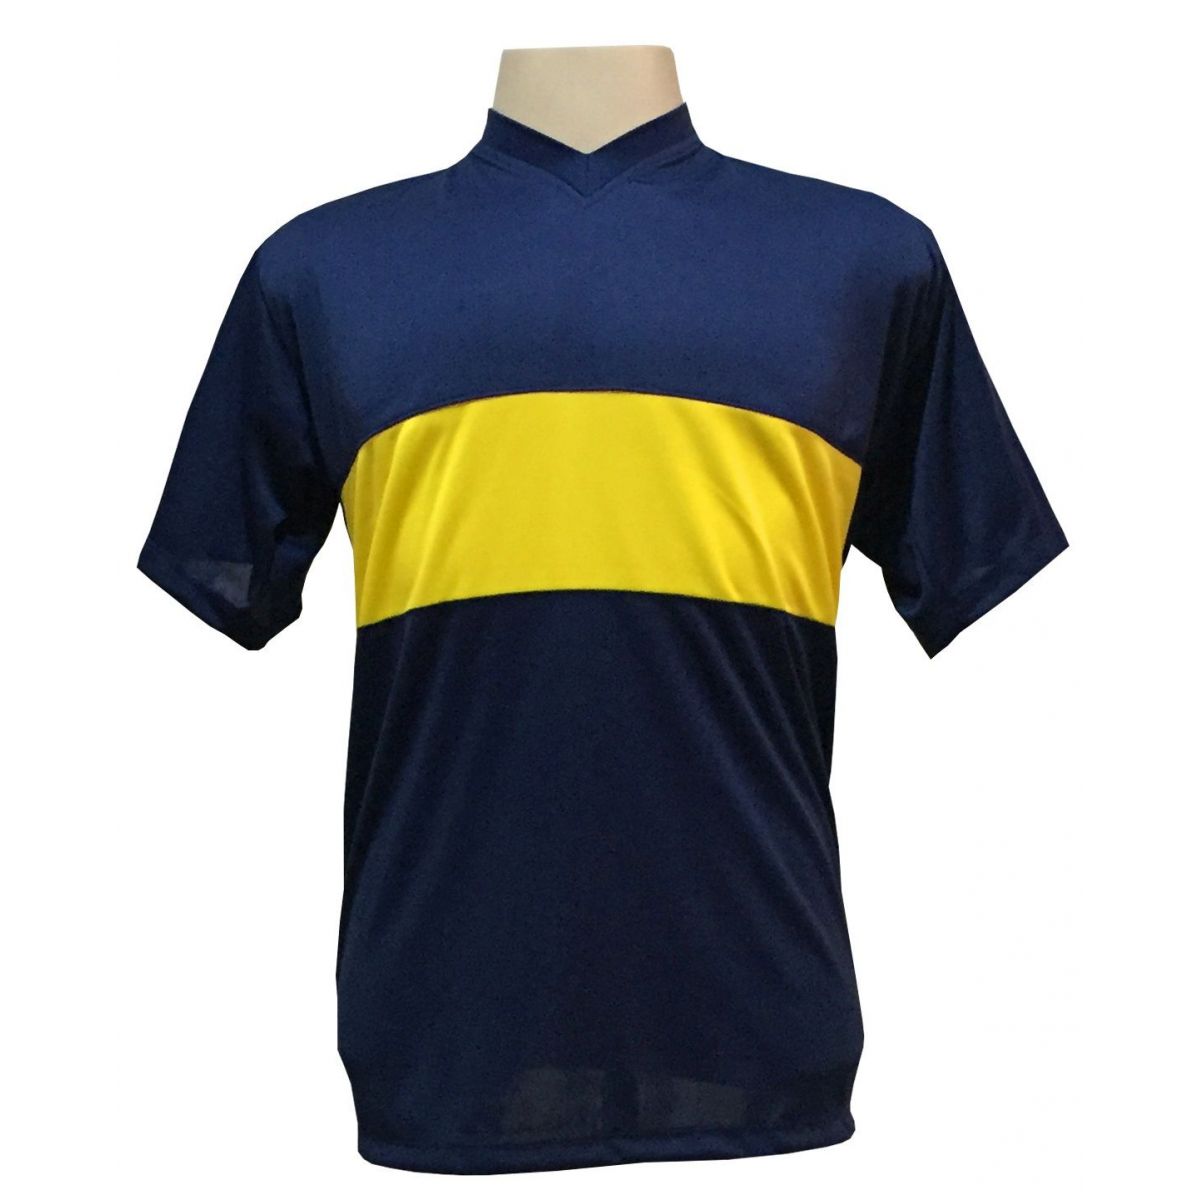 Uniforme Esportivo Completo modelo Boca Juniors 14+1 (14 camisas Marinho/Amarelo + 14 calções Madrid Amarelo + 14 pares de meiões Amarelos + 1 conjunto de goleiro) + Brindes